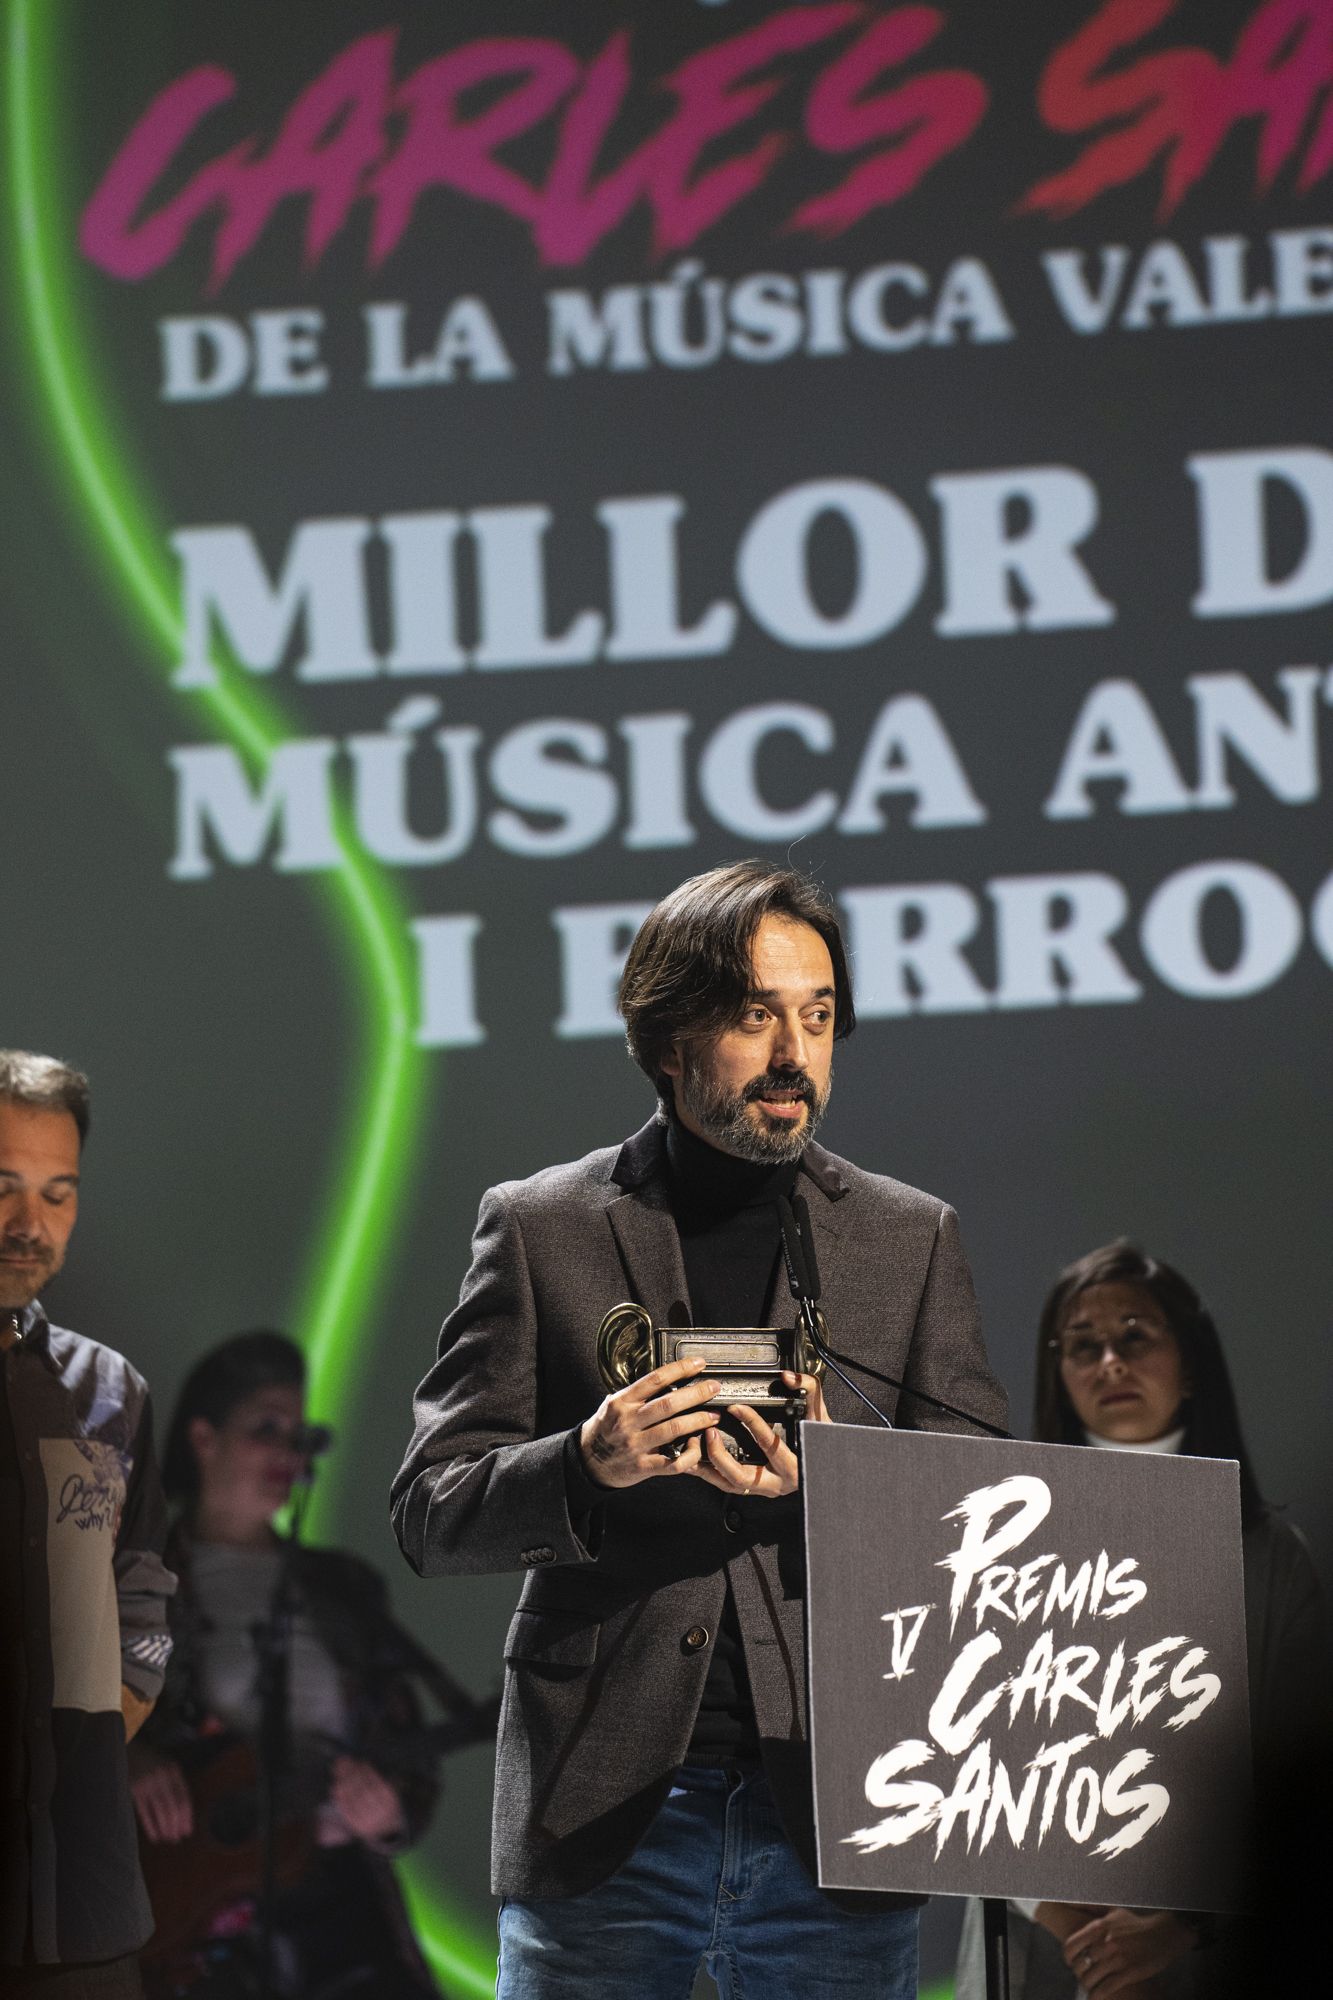 Todas las imágenes de los premios Carles Santos